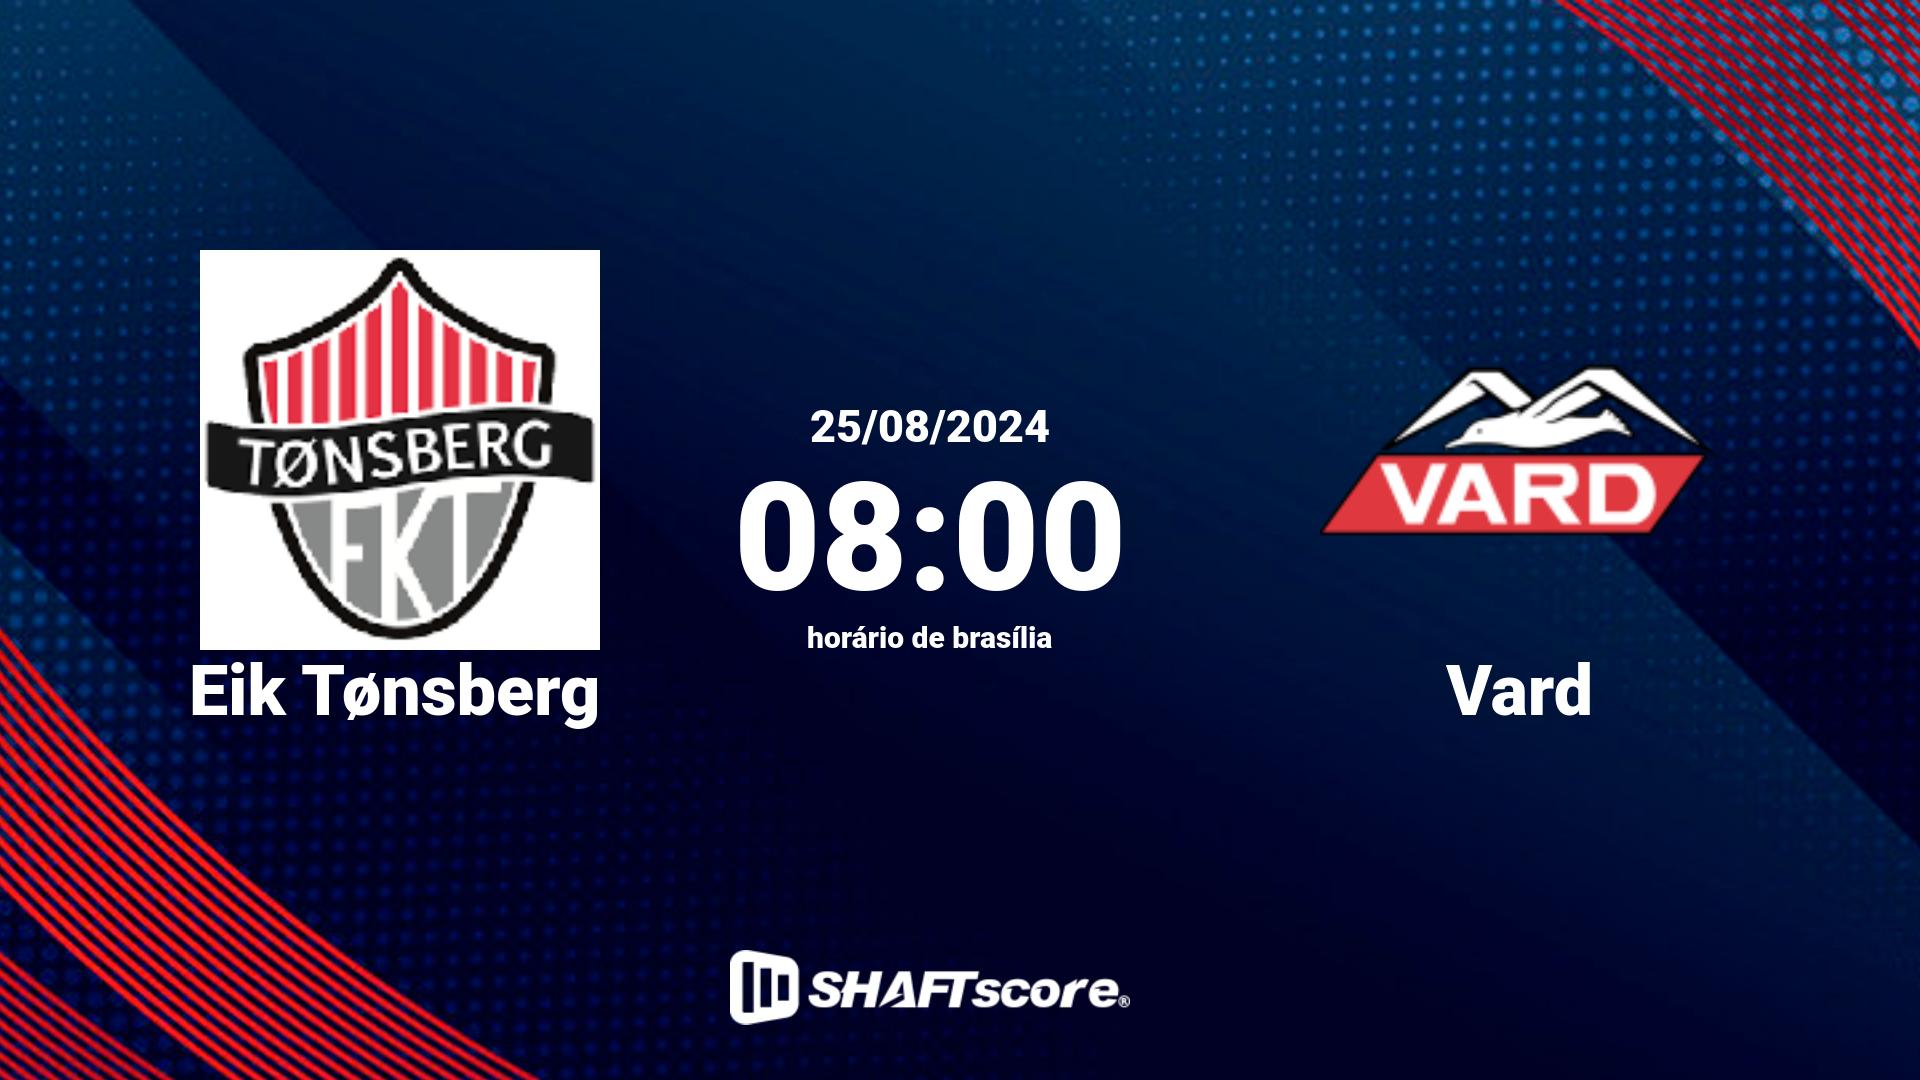 Estatísticas do jogo Eik Tønsberg vs Vard 25.08 08:00